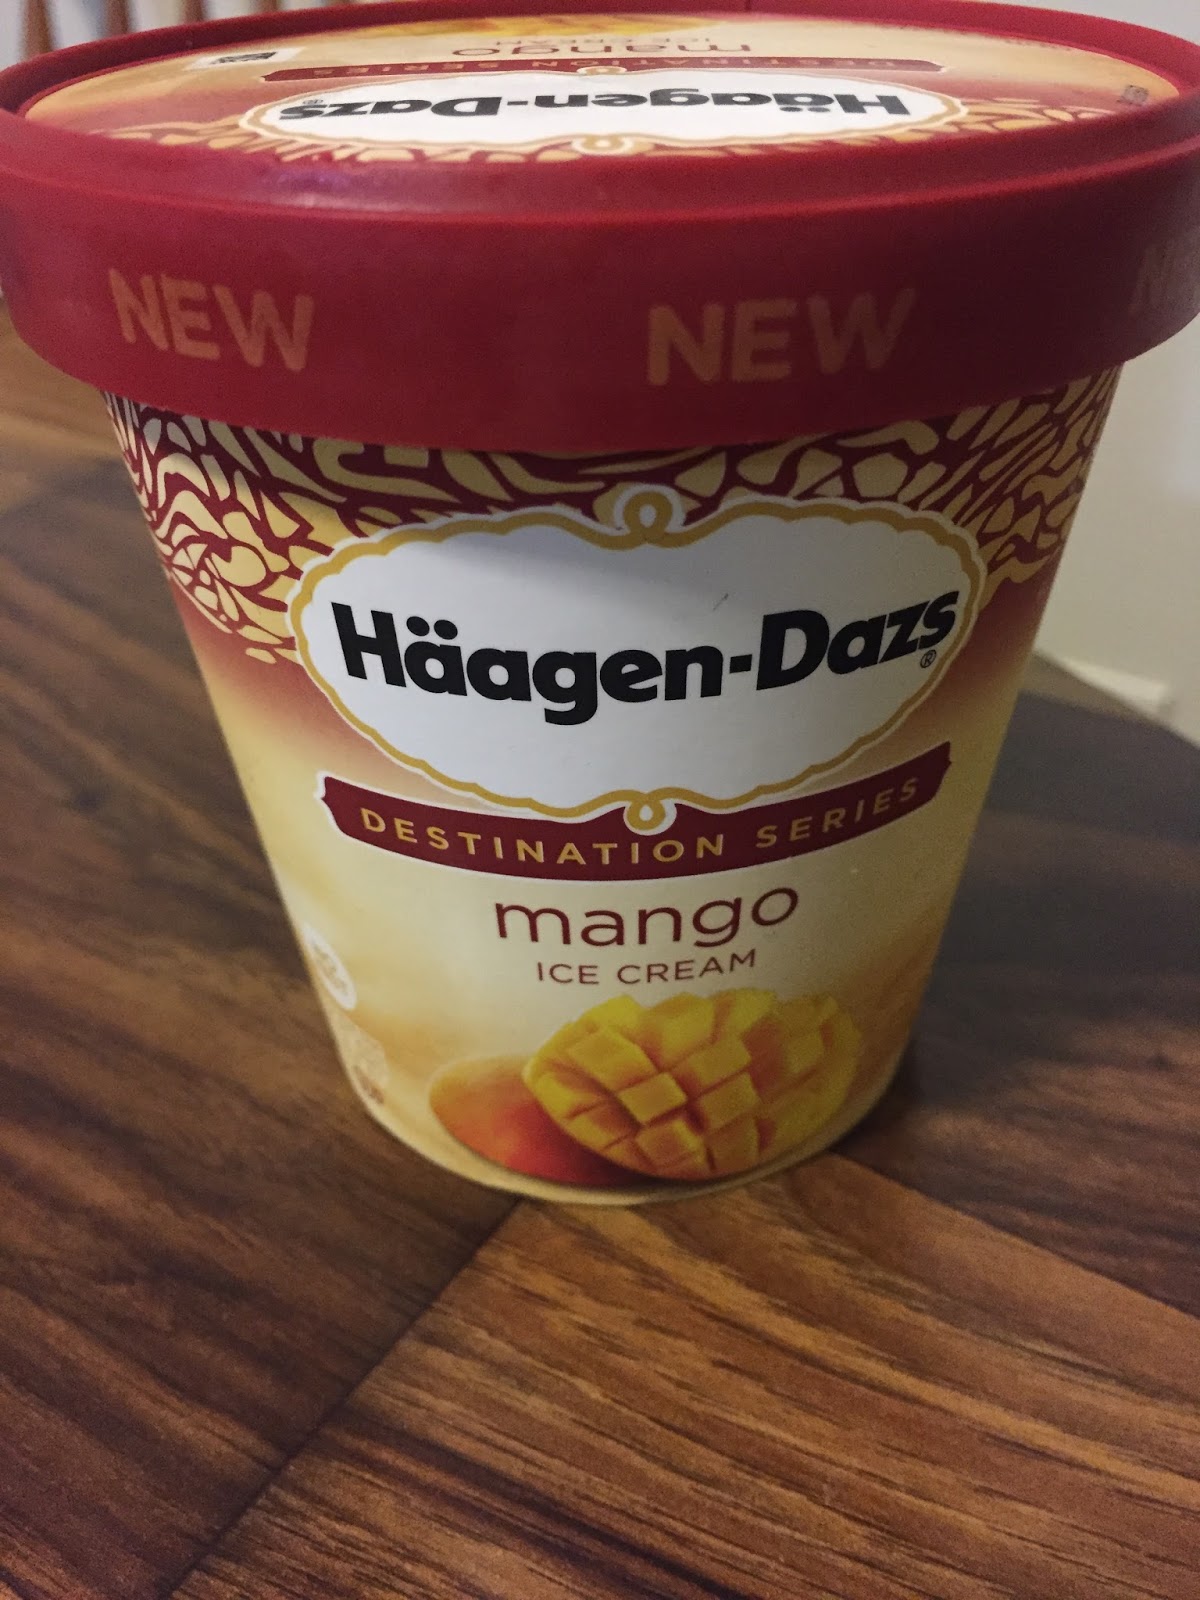 Haagen-Dazs Destination Series Mango